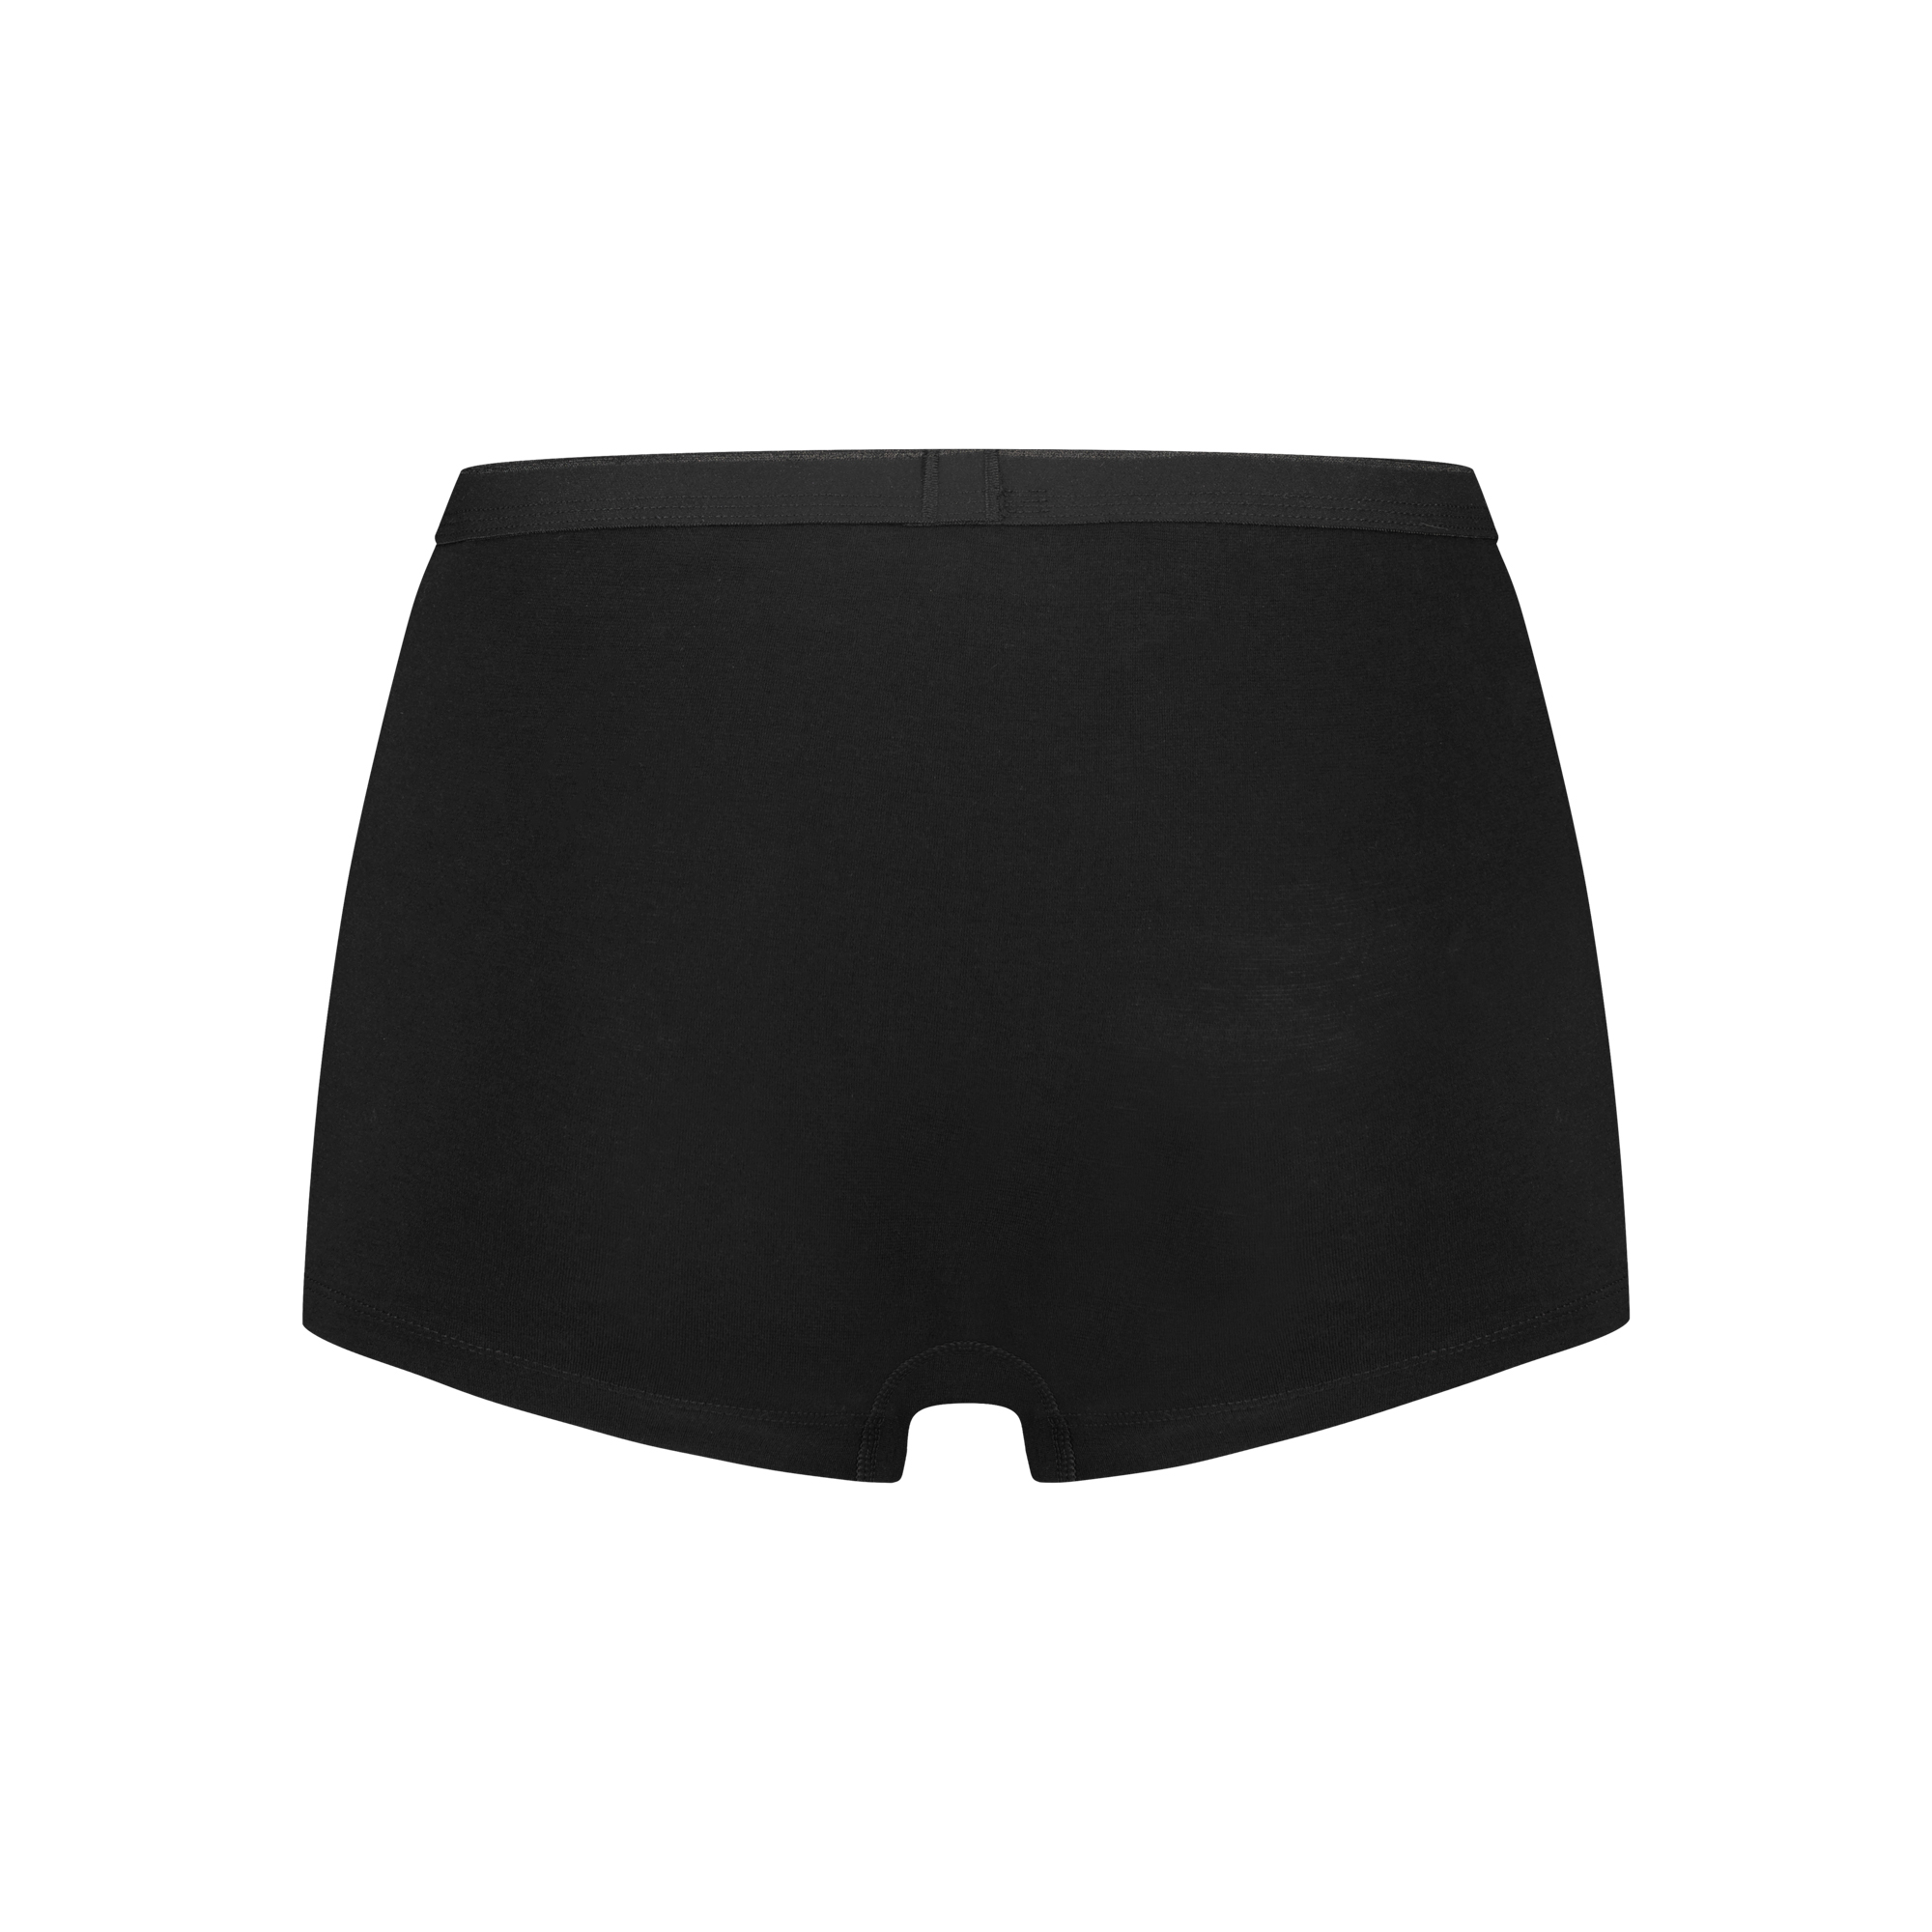 shorts zwart 4 pack